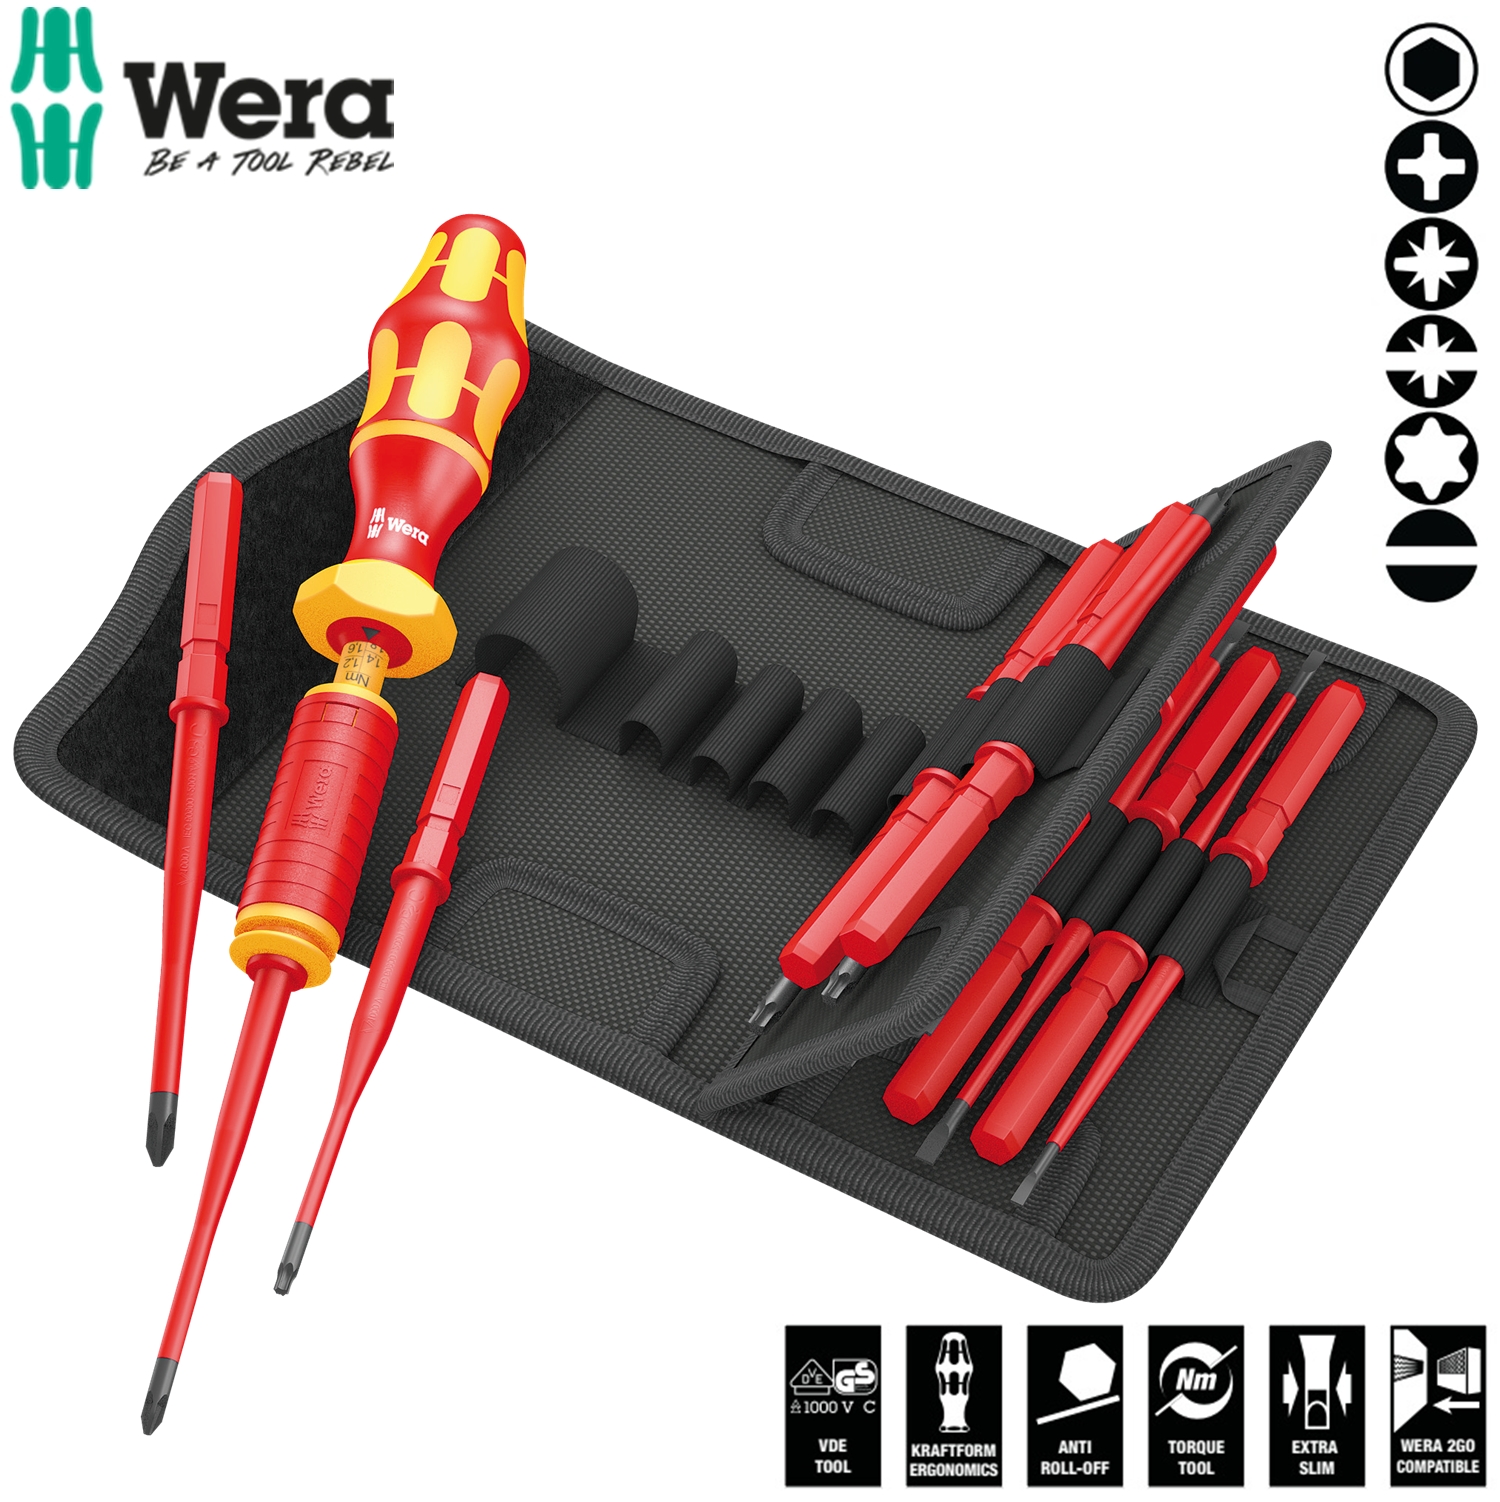 Bộ tua vít cân chỉnh lực cách điện Wera 05059291001 Kraftform Kompakt VDE 15 Torque 1.2-3.0 Nm extra slim 1 gồm 15 cái